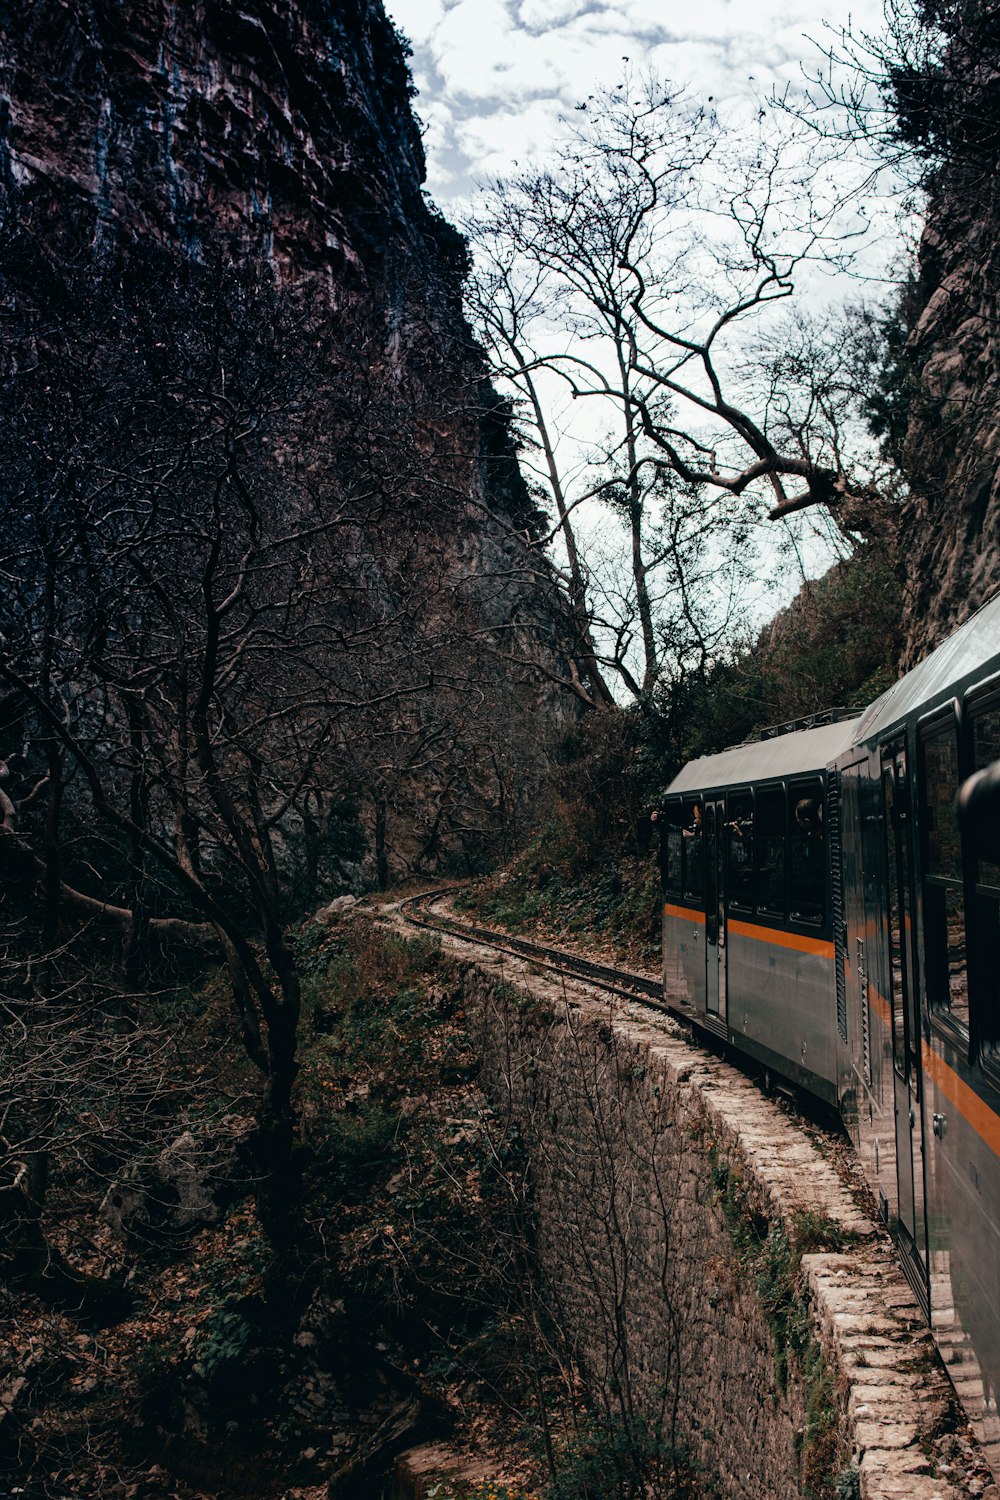 Weißer Zug tagsüber auf Schienen in der Nähe von Bäumen